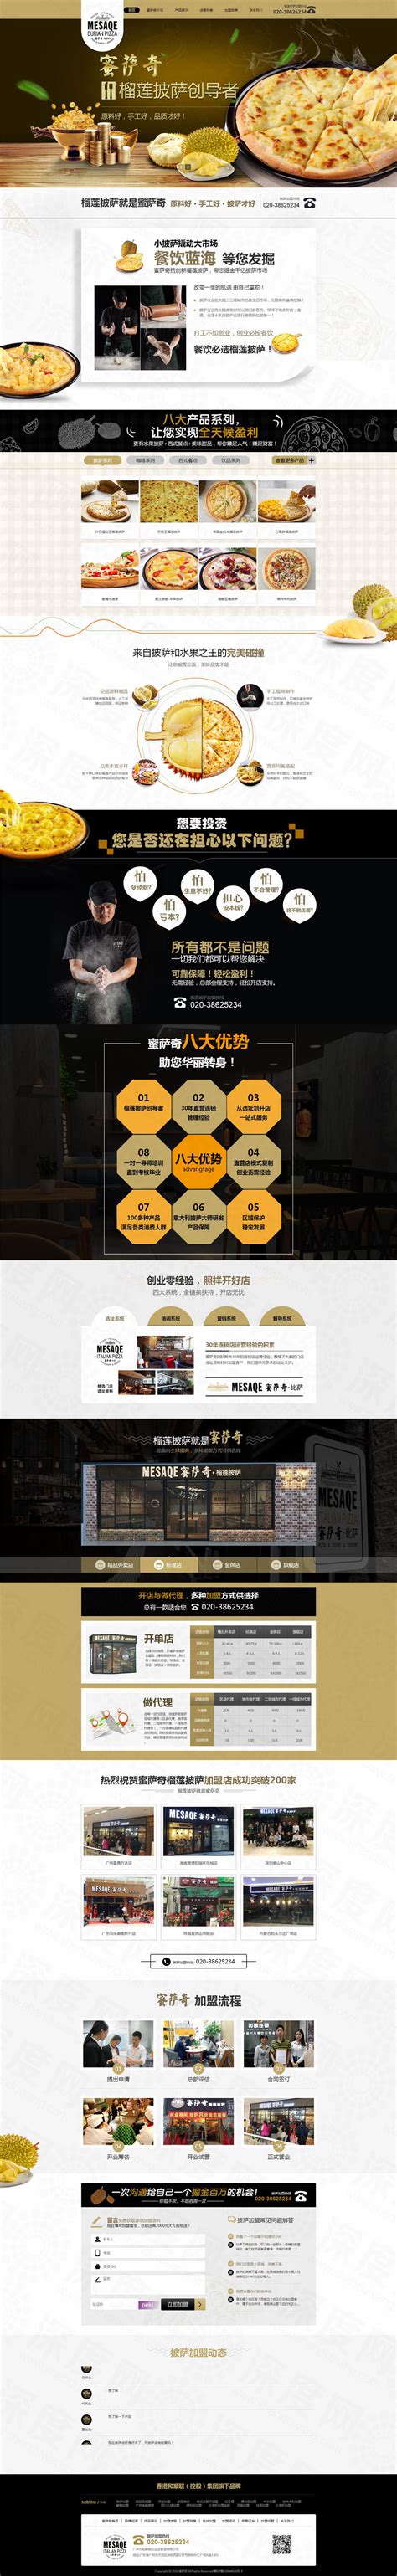 广州蜜萨奇披萨加盟营销型网站建设案例|餐饮/酒店/娱乐|深度网